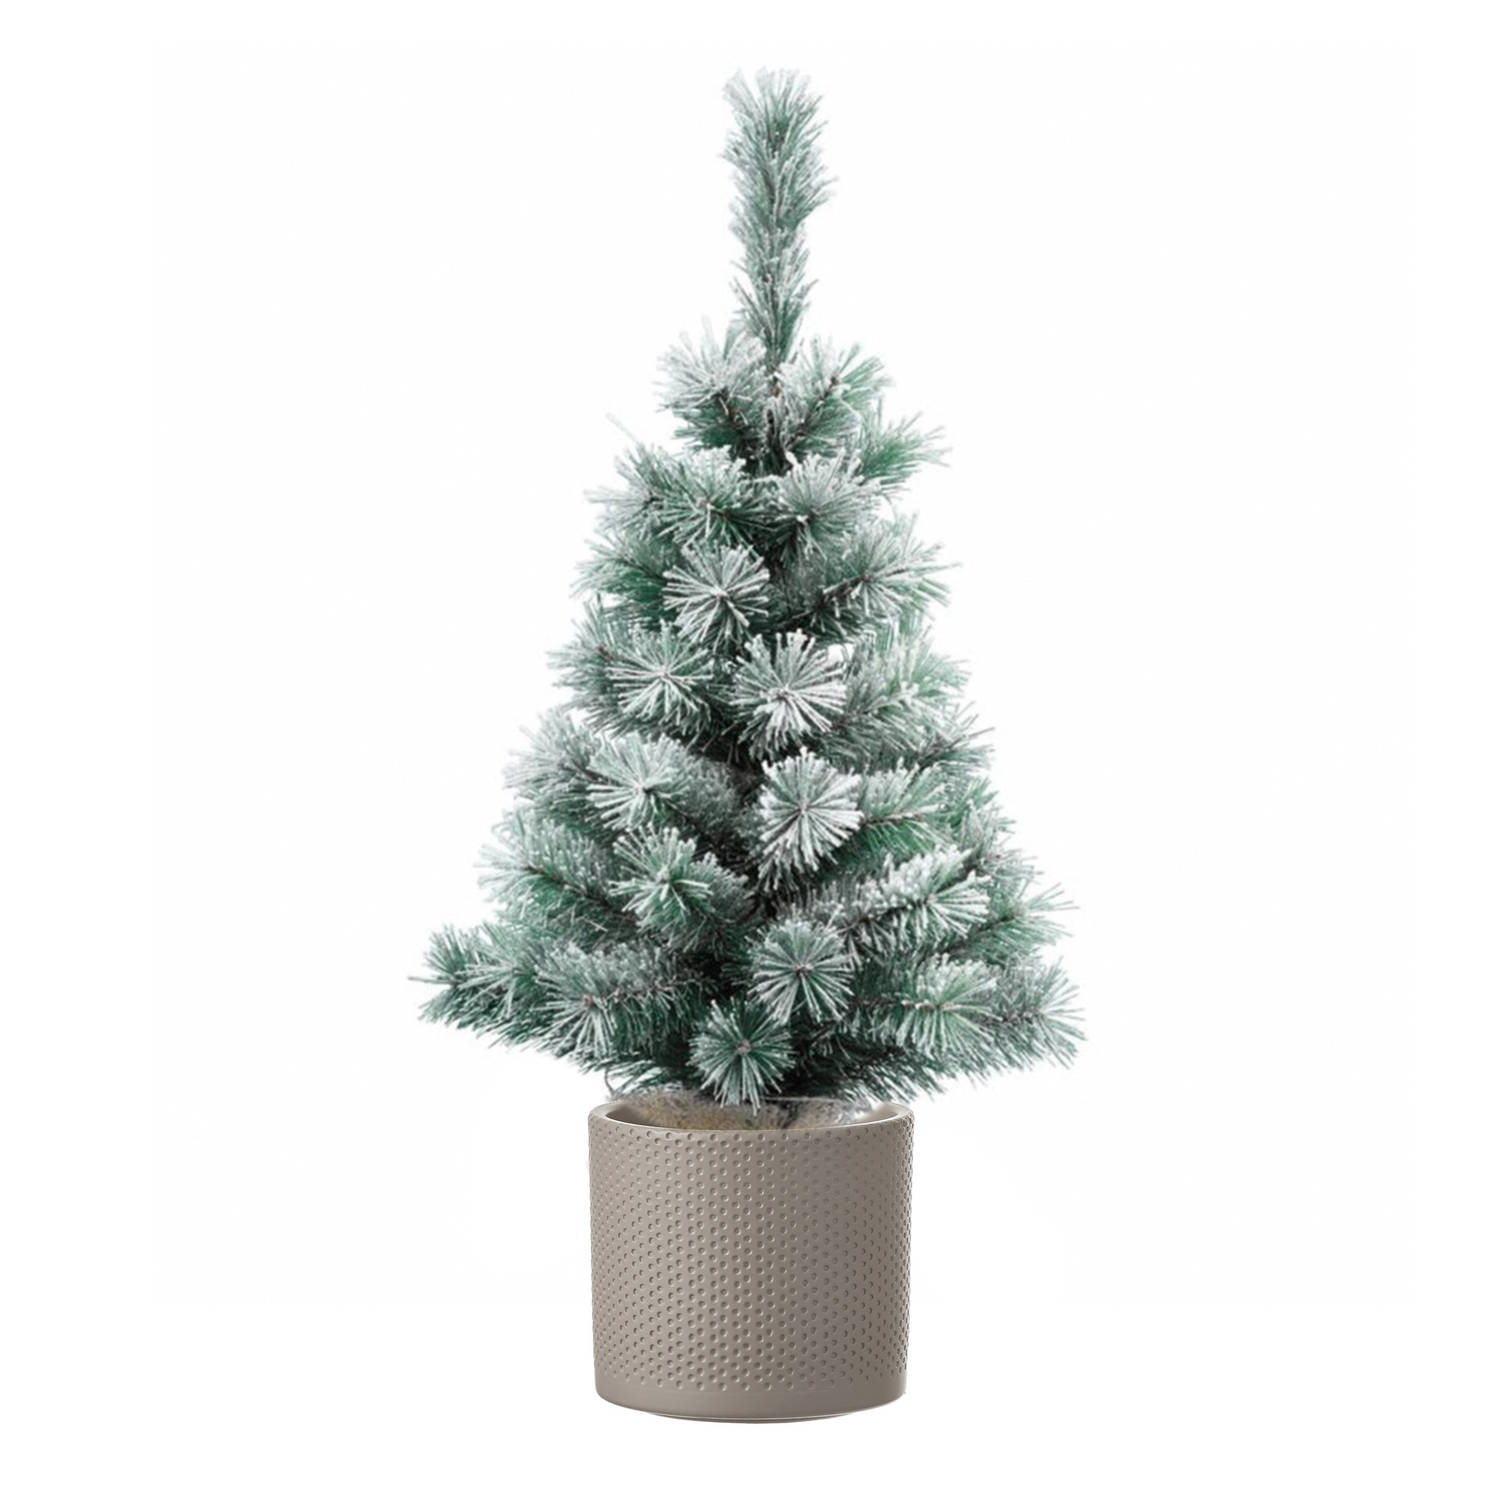 Volle besneeuwde kunst kerstboom 75 cm inclusief taupe pot Kunstkerstboom